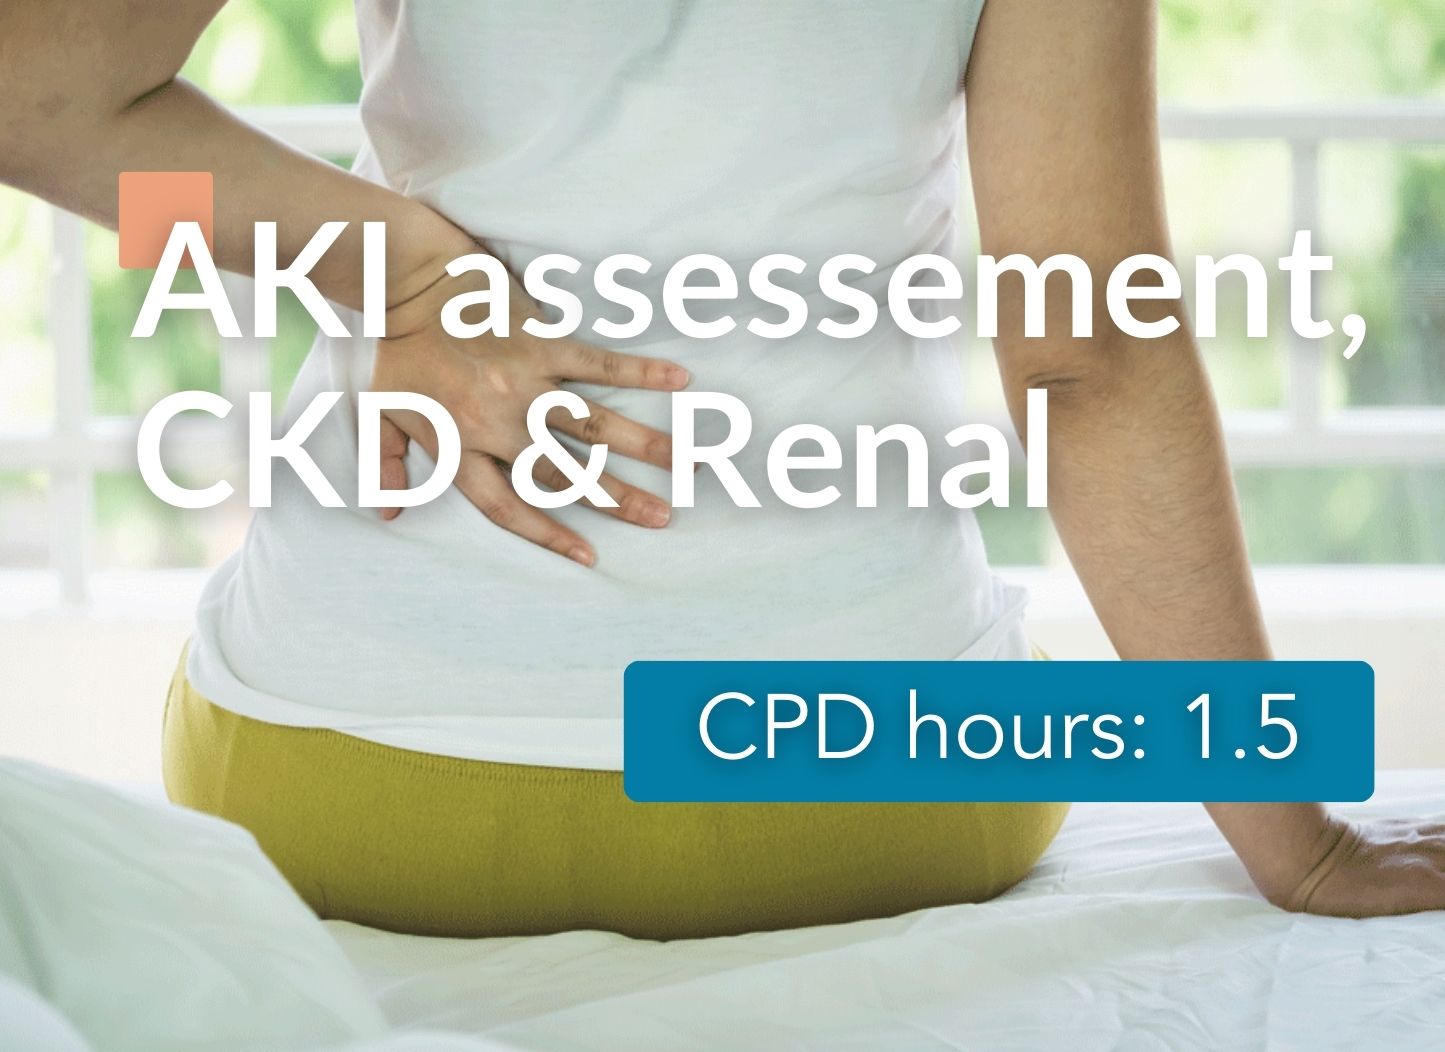 AKI assessment, CKD & Renal